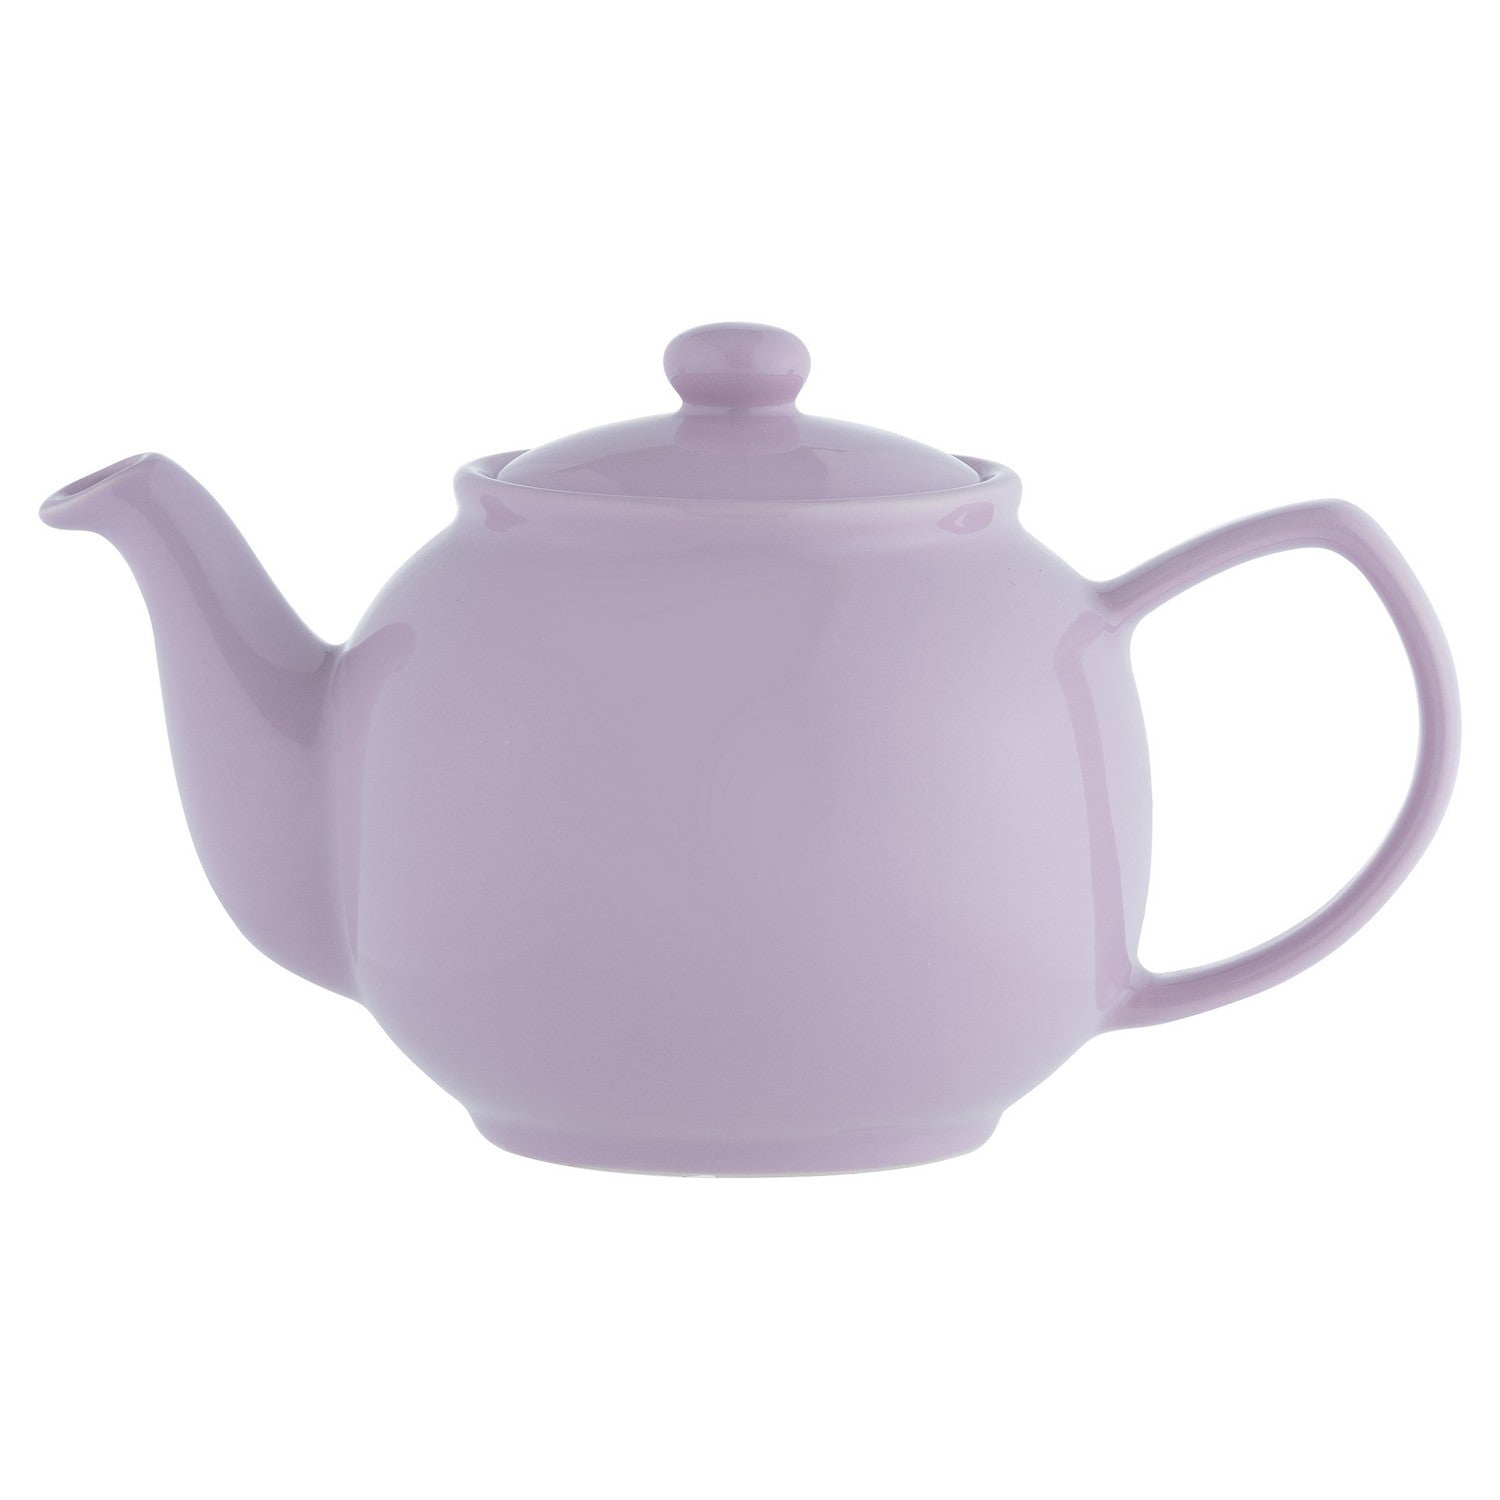 Price & Kensington 6 Cup Teapot Lavender 1.1L